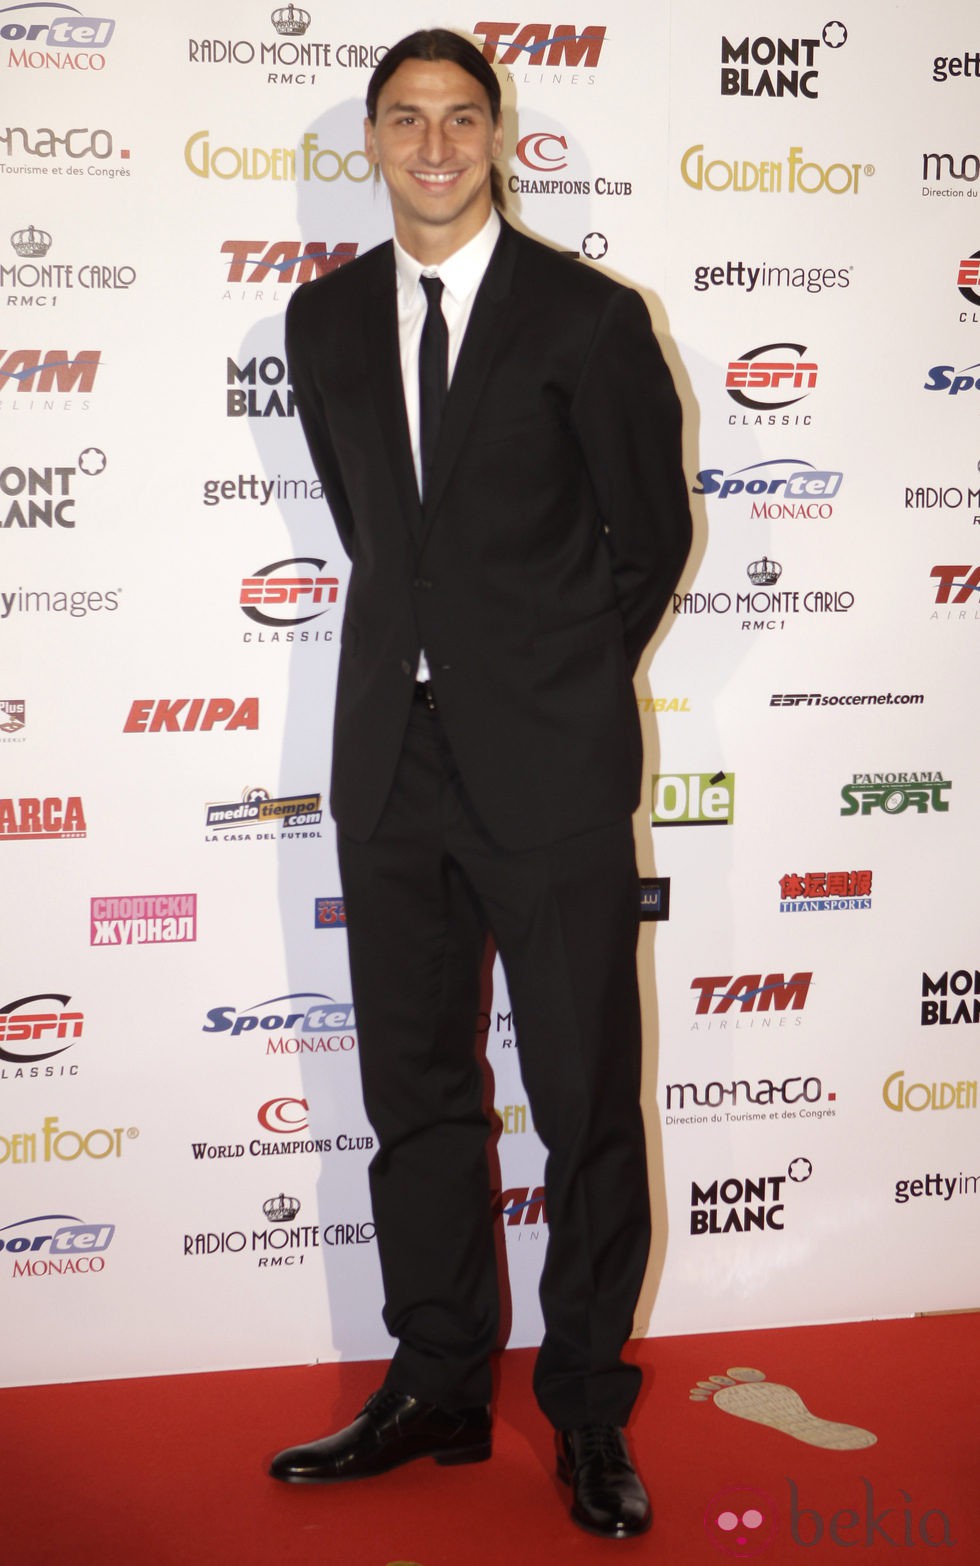 Zlatan Ibrahimovic en la gala de los Golden Foot 2012 en Mónaco